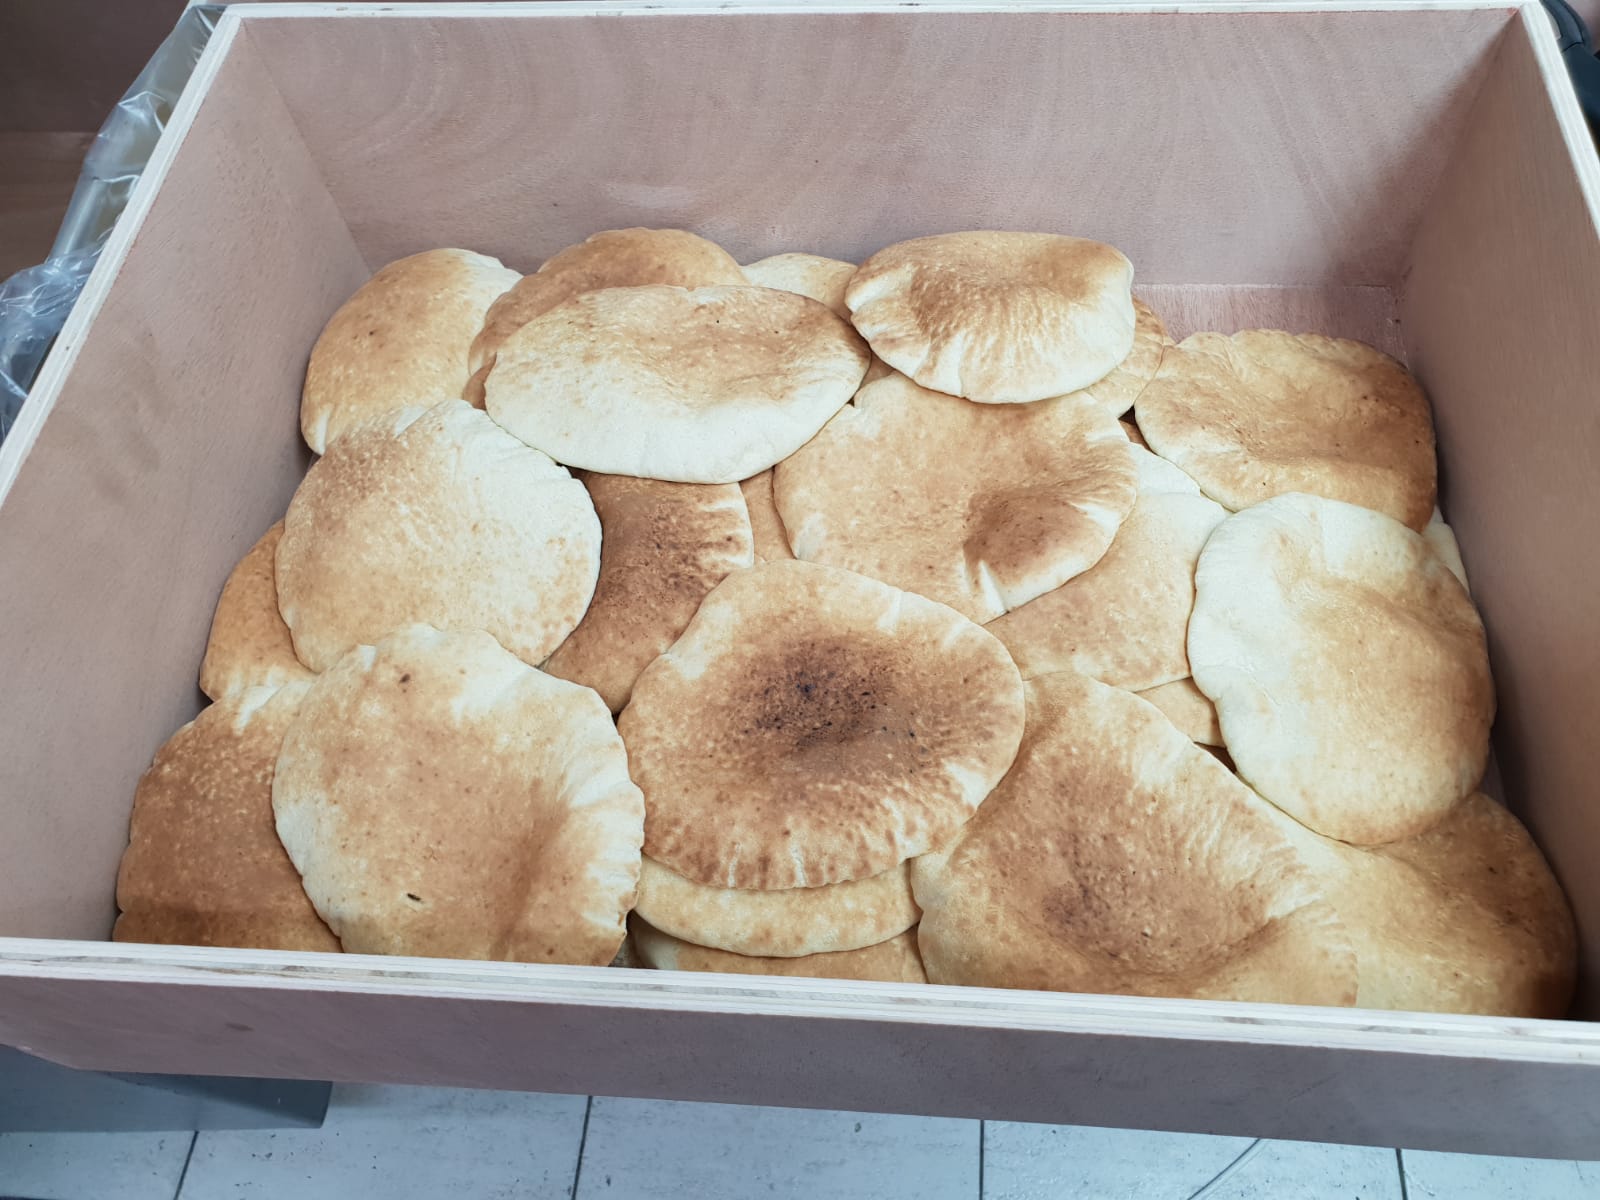  افتتاح مخبز الشيخ علي عطية في شارع شديروت يروشلايم بيافا